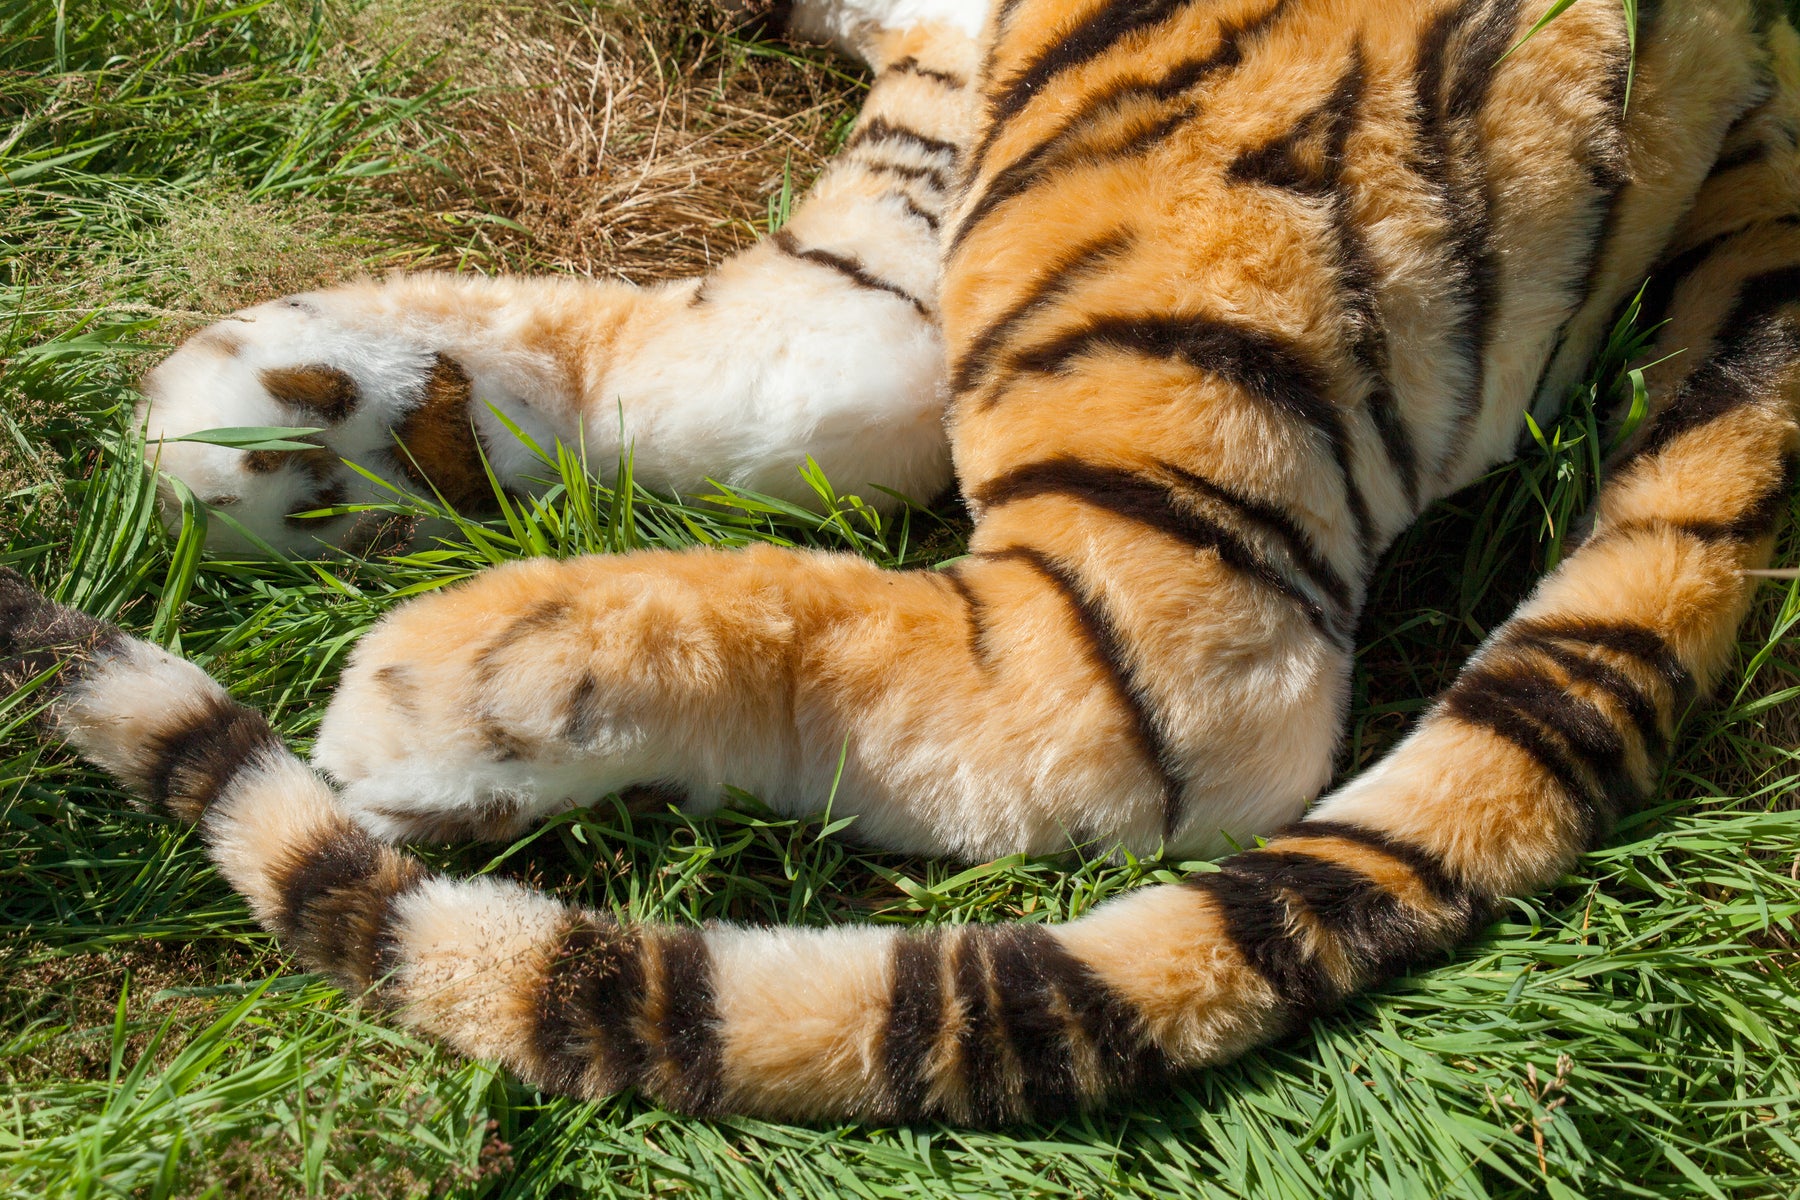 Lifesize Plush Bengal Tiger – Aurora Plasma Design